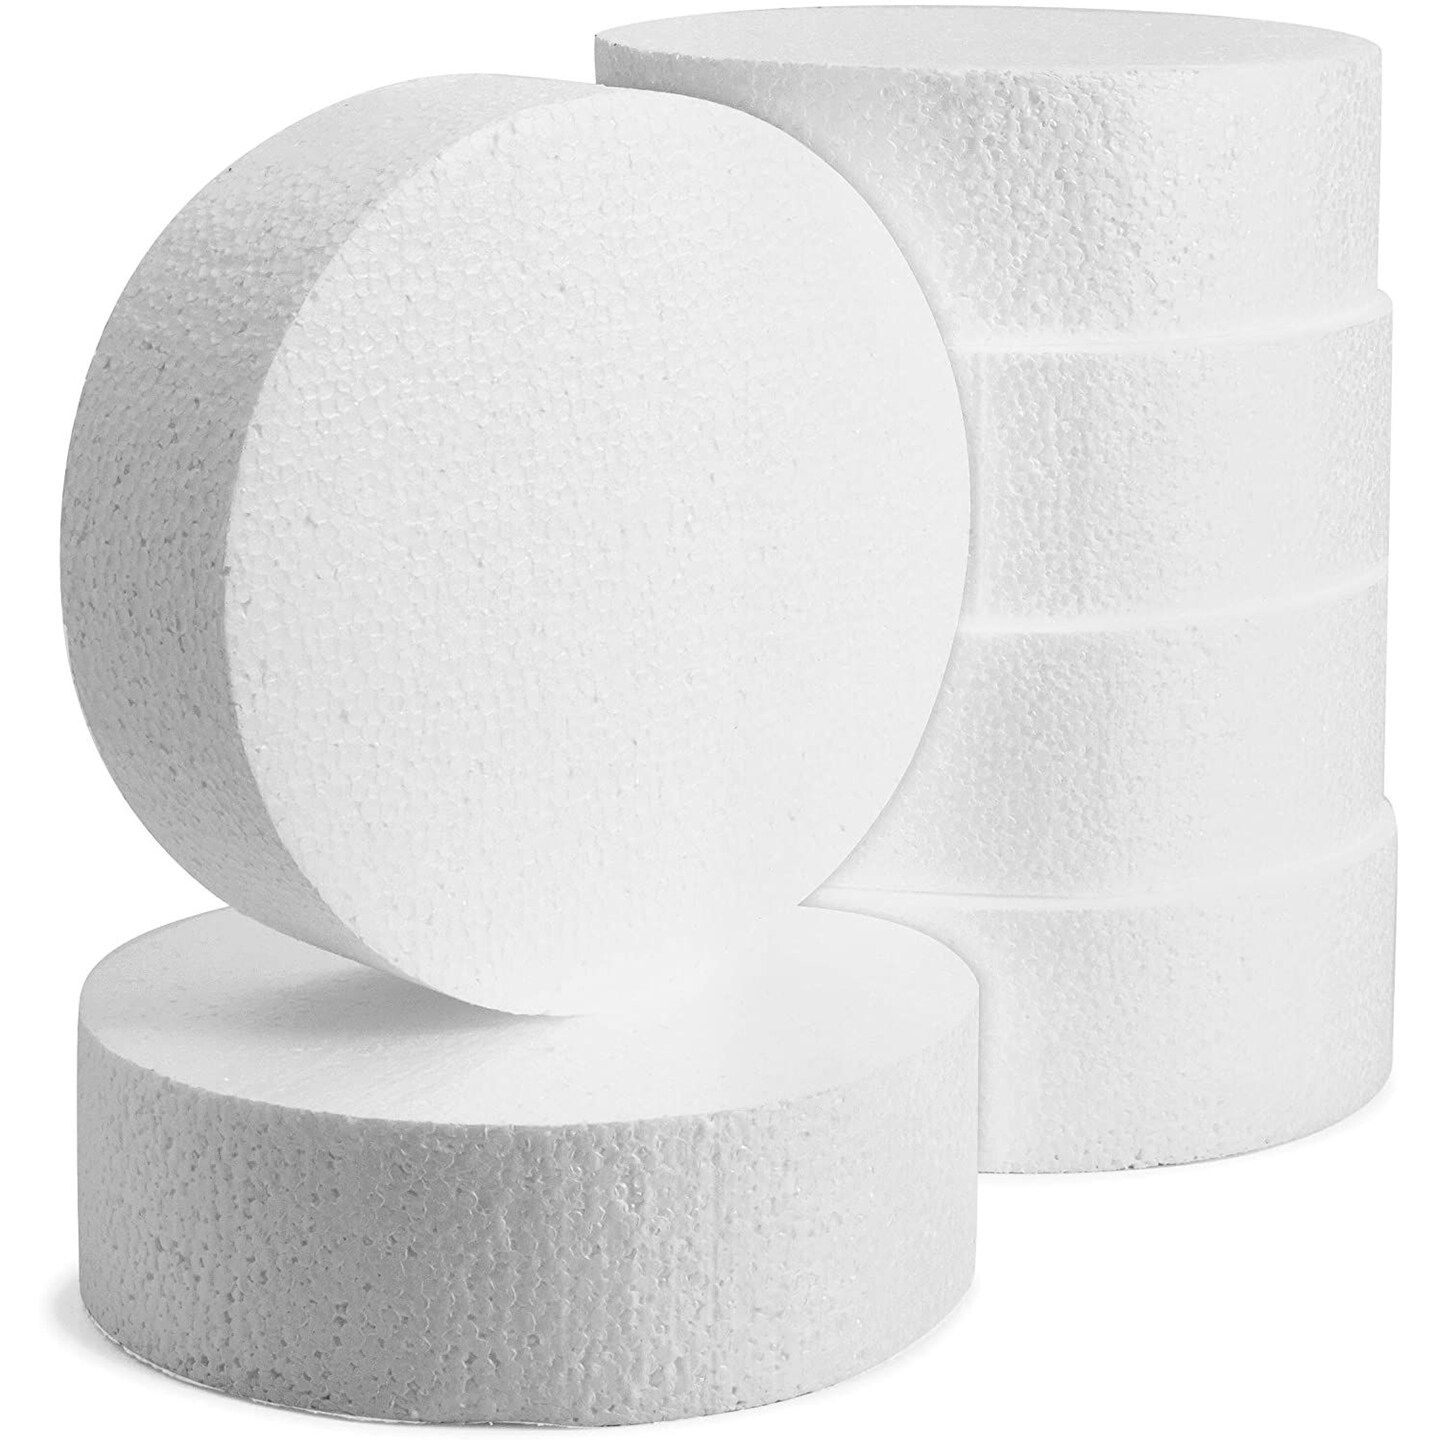 White Foam Disks, 2-ct. Packs